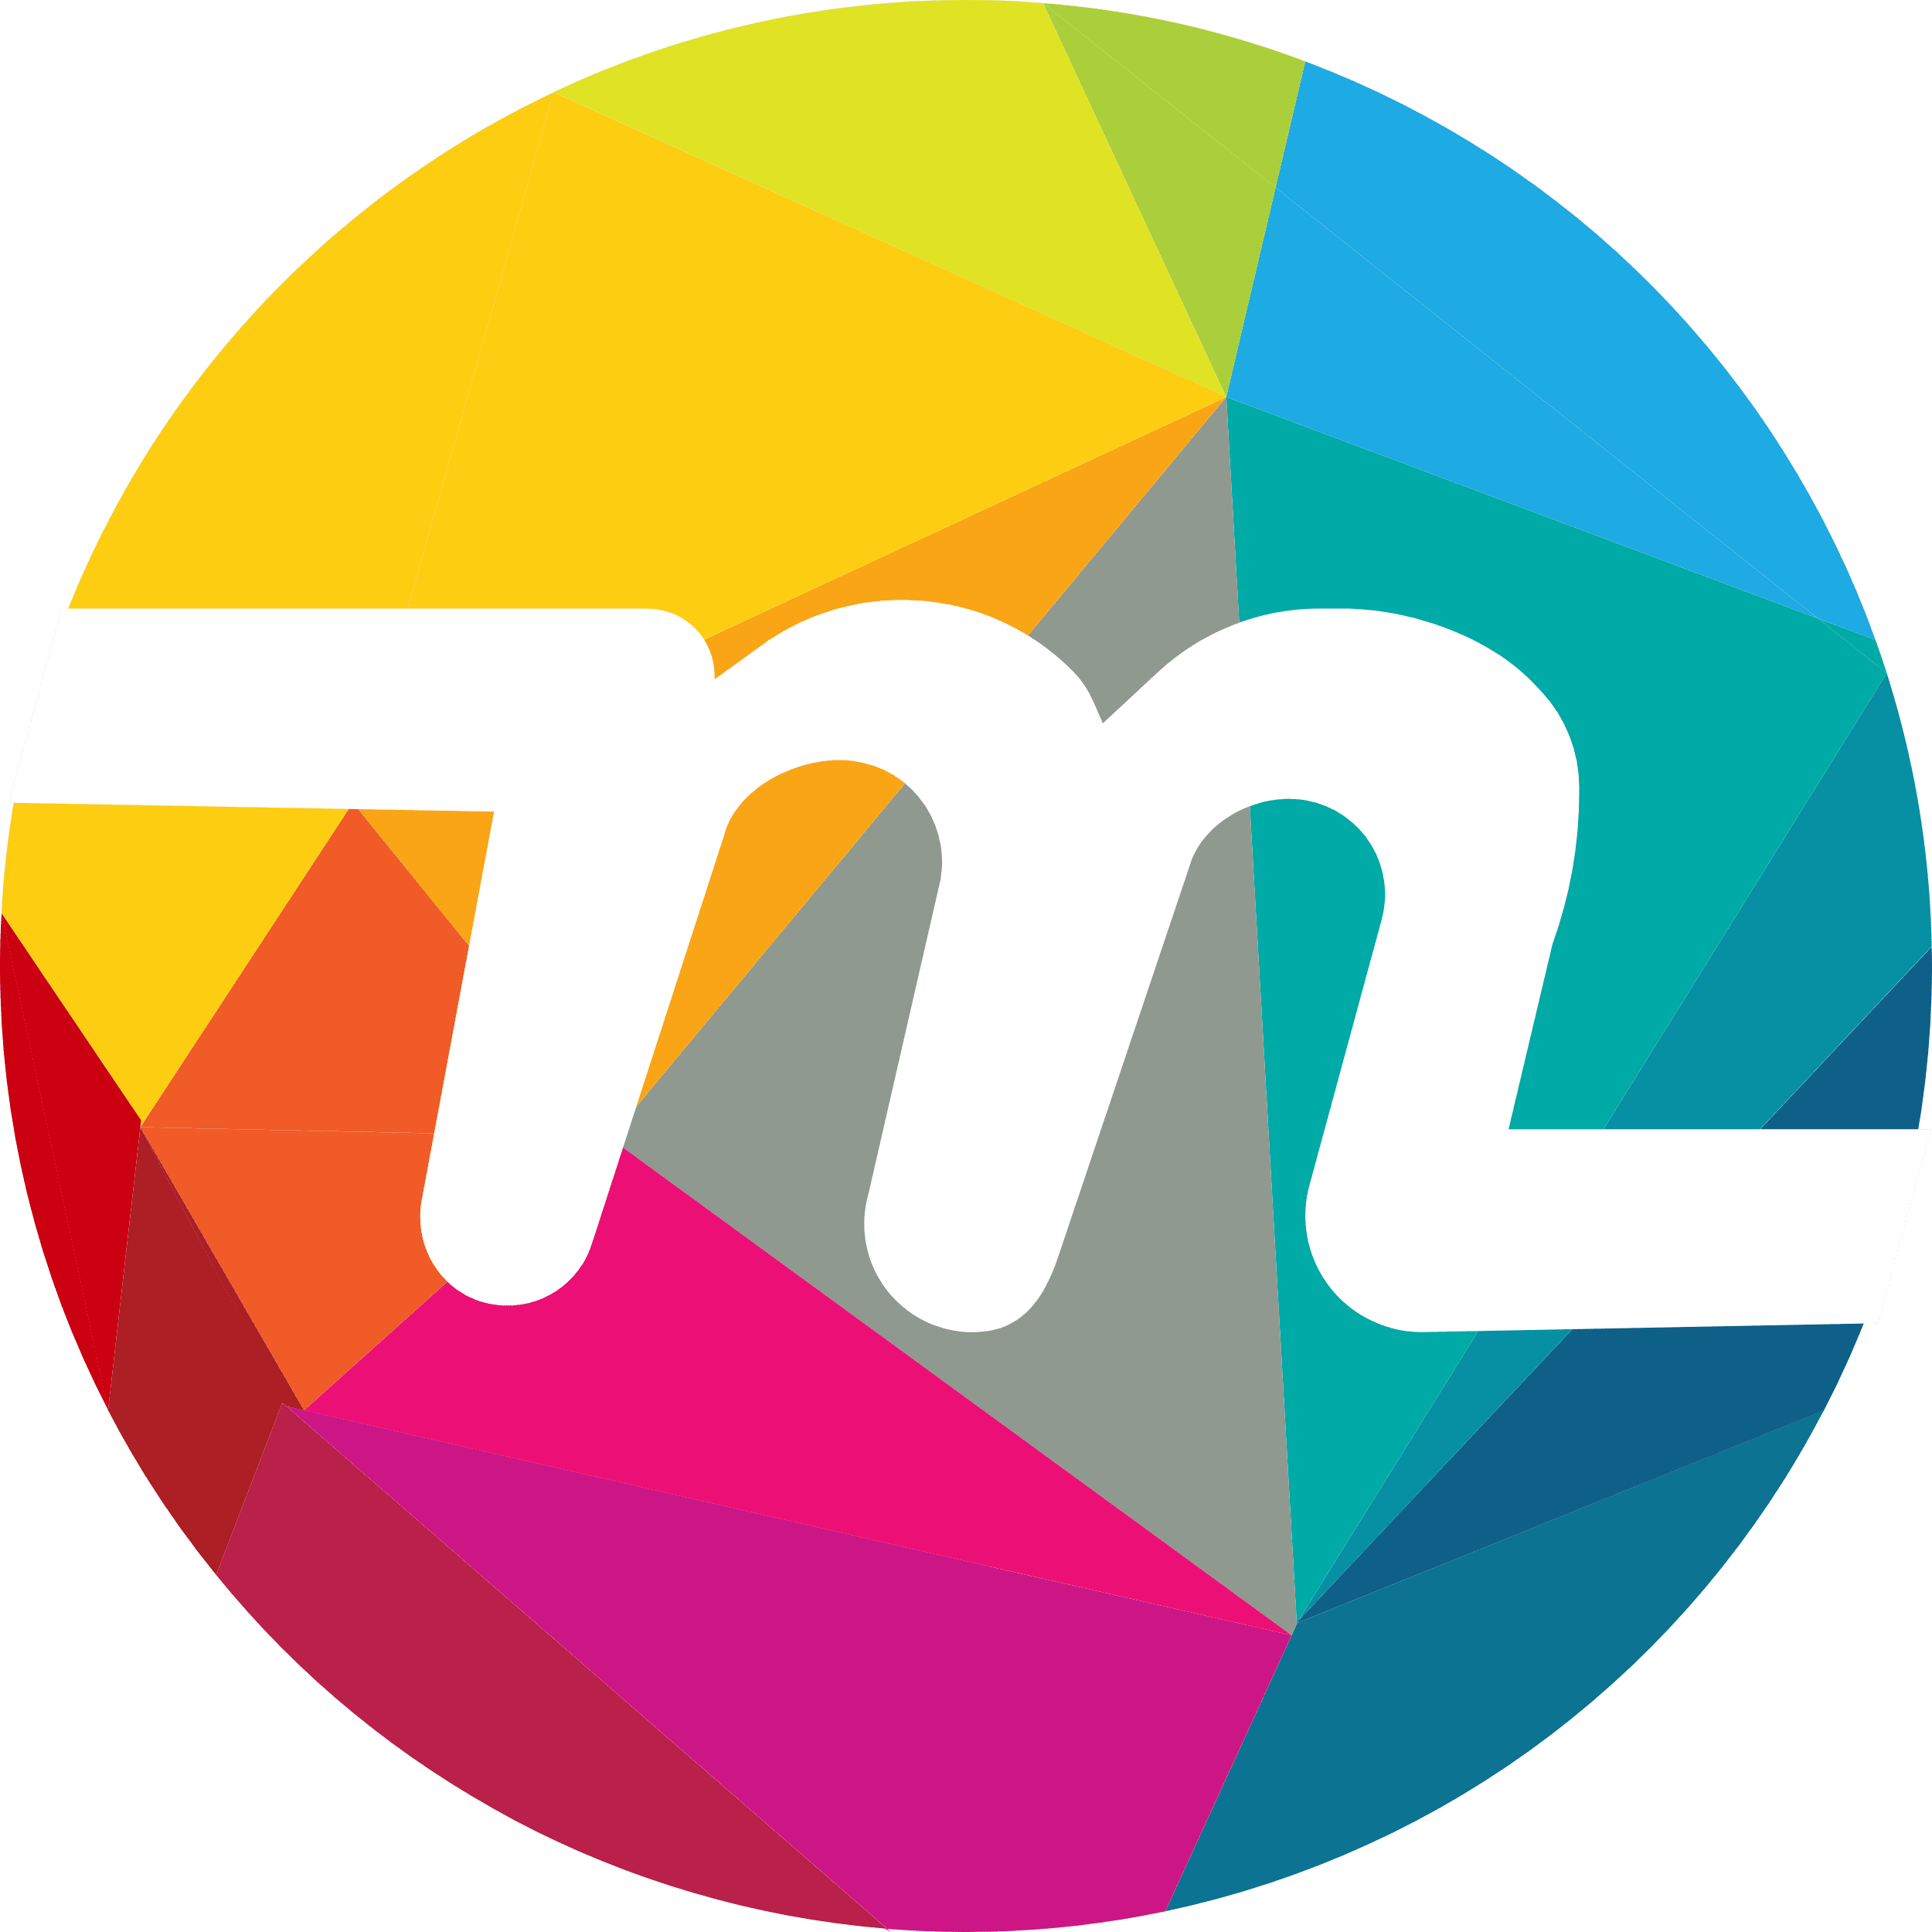 Myriad logo in svg format